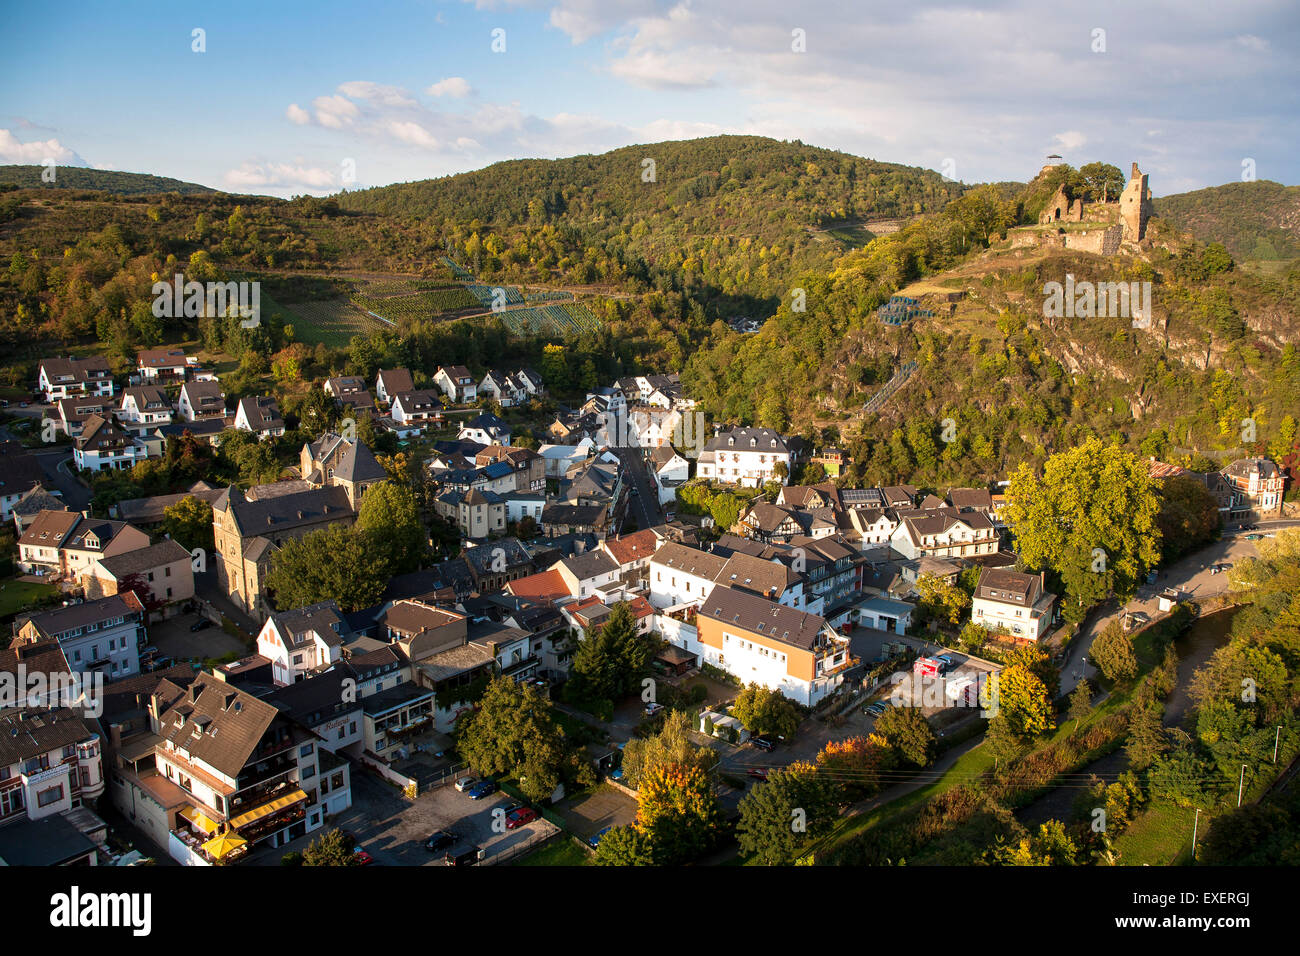 Europa, Deutschland, Rheinland-Pfalz, Eifel-Region, Blick nach Altenahr am Fluss Ahr, auf der rechten Seite des Schlosses sind.  Europa, De Stockfoto